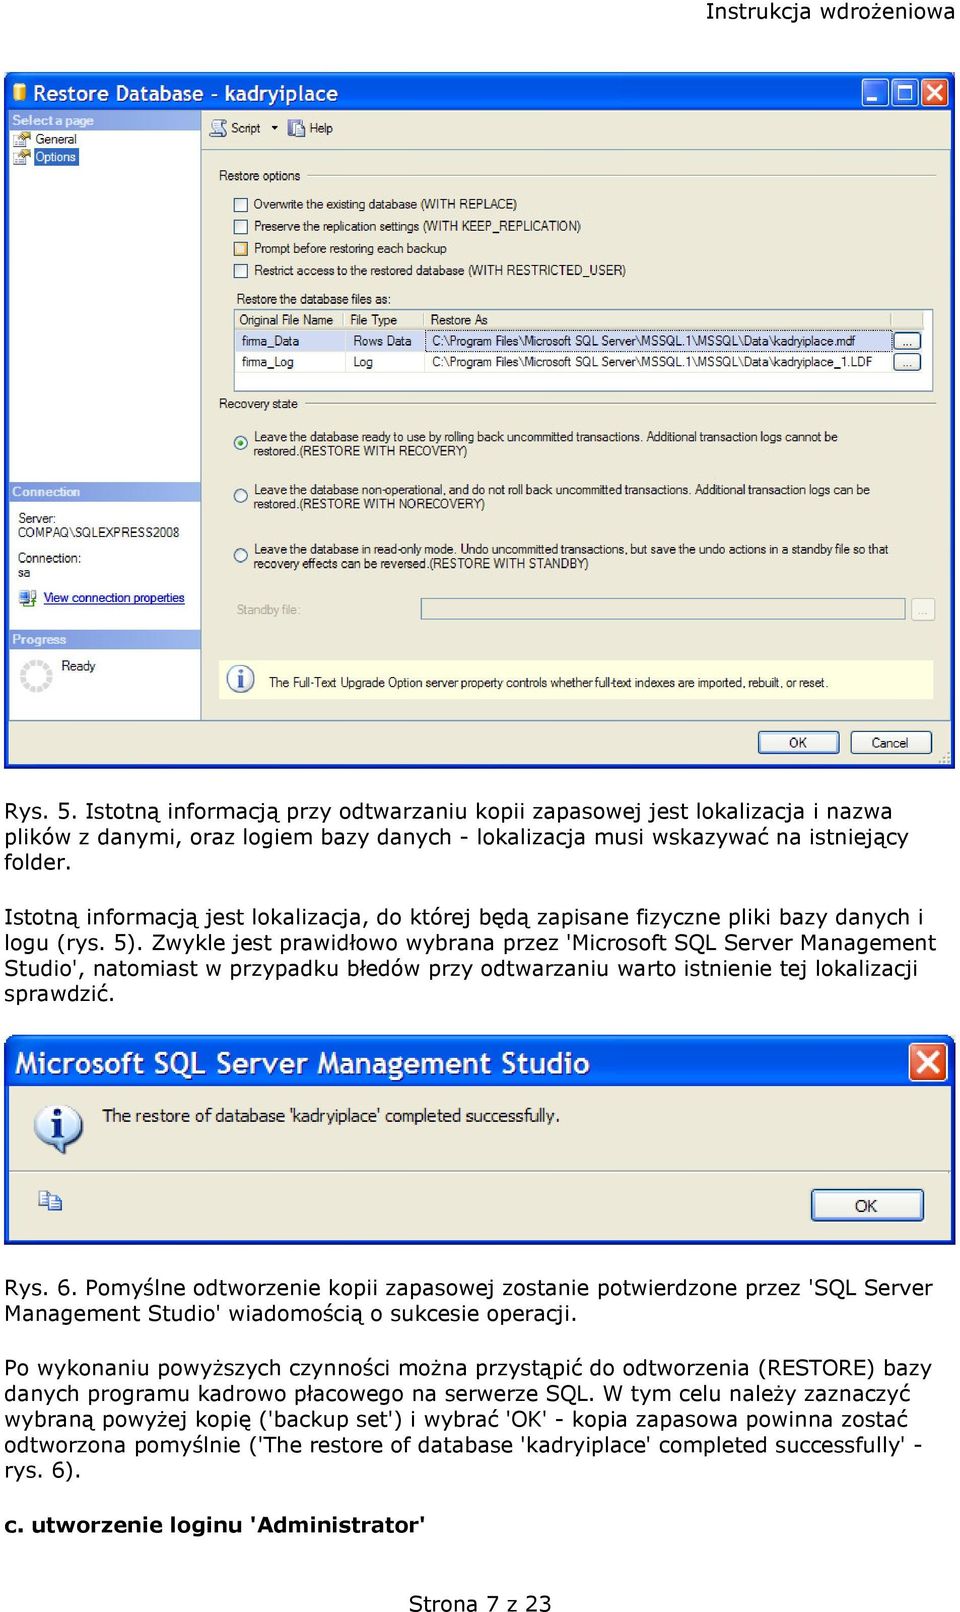 Zwykle jest prawidłowo wybrana przez 'Microsoft SQL Server Management Studio', natomiast w przypadku błedów przy odtwarzaniu warto istnienie tej lokalizacji sprawdzić. Rys. 6.